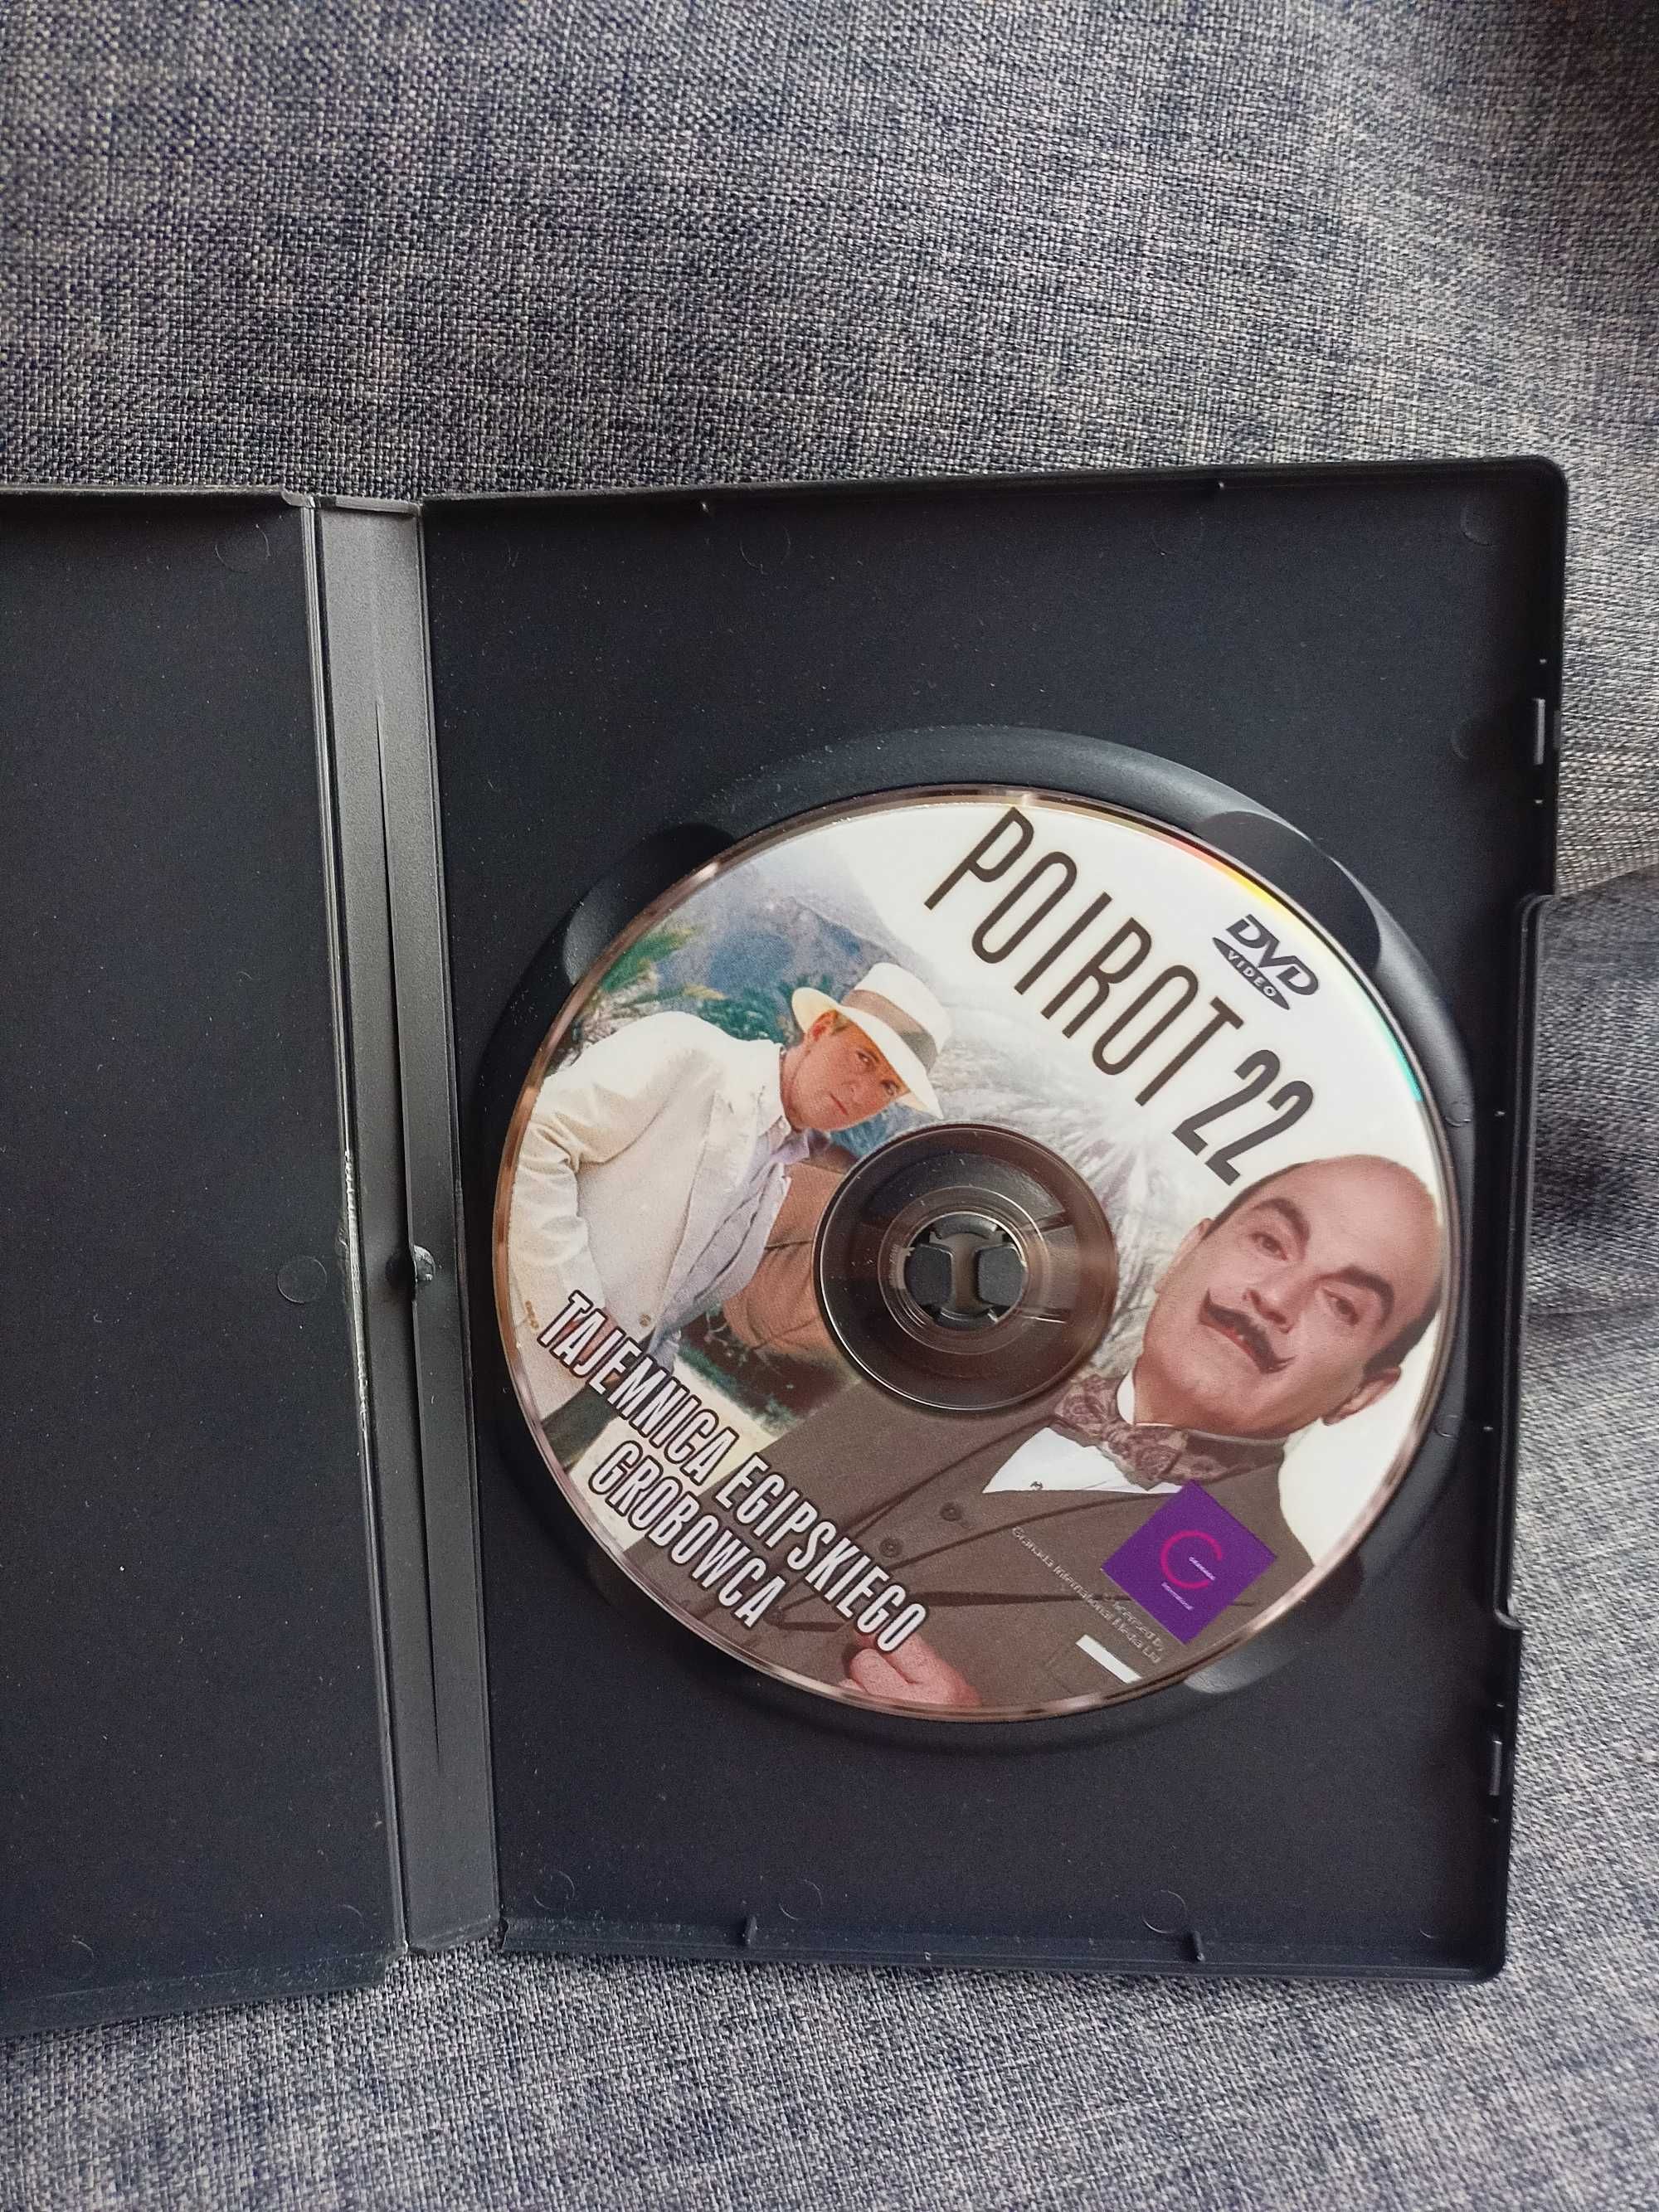 DVD Poirot 22. Tajemnica egipskiego grobowca